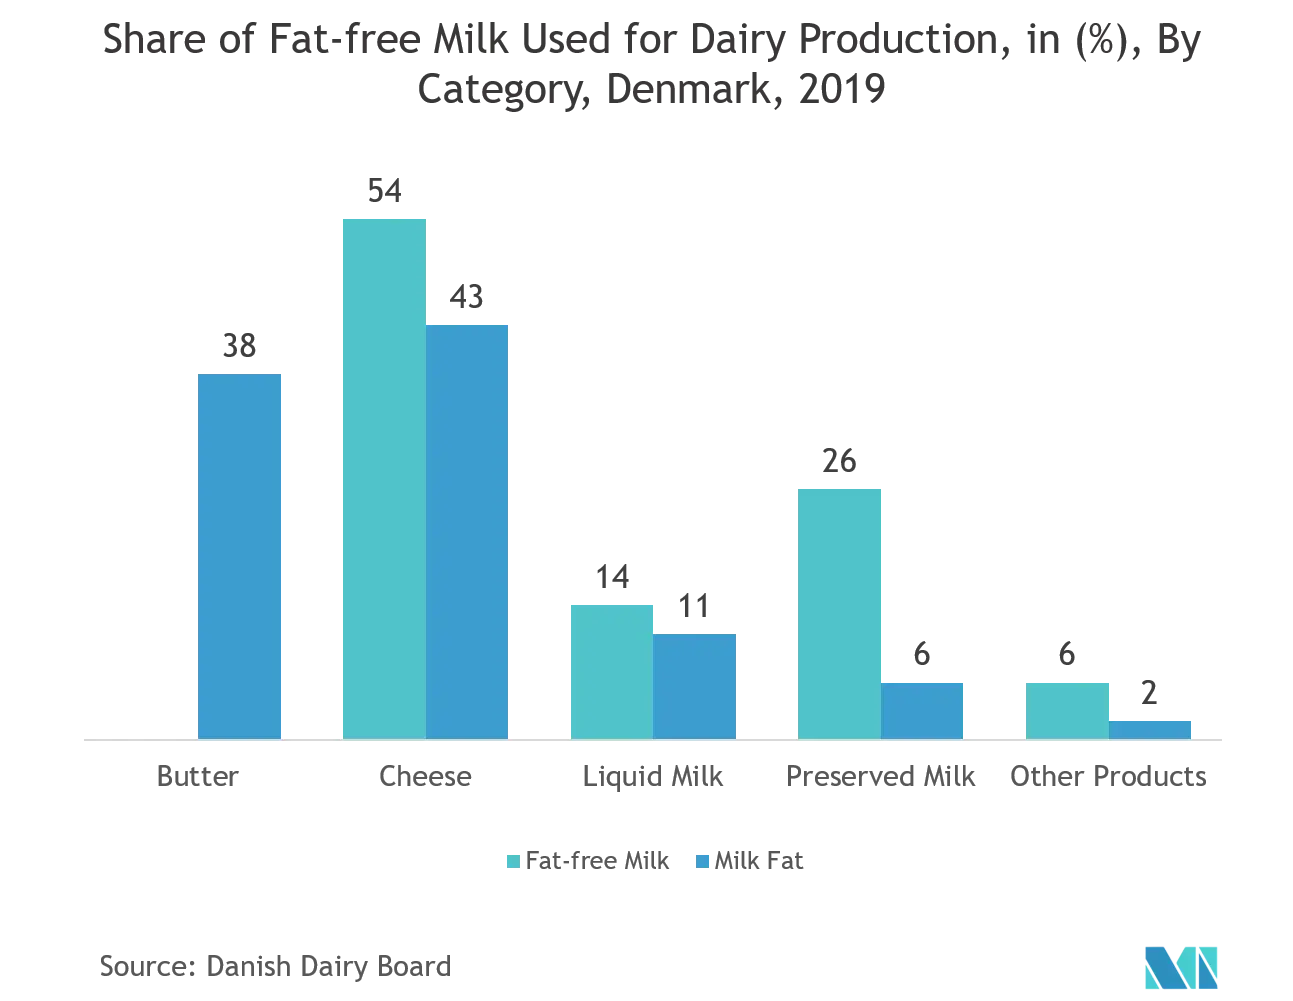 Thị trường thử nghiệm đóng gói Châu Âu Tỷ lệ sữa không béo được sử dụng để sản xuất sữa, tính bằng (%), Theo danh mục, Đan Mạch, 2019